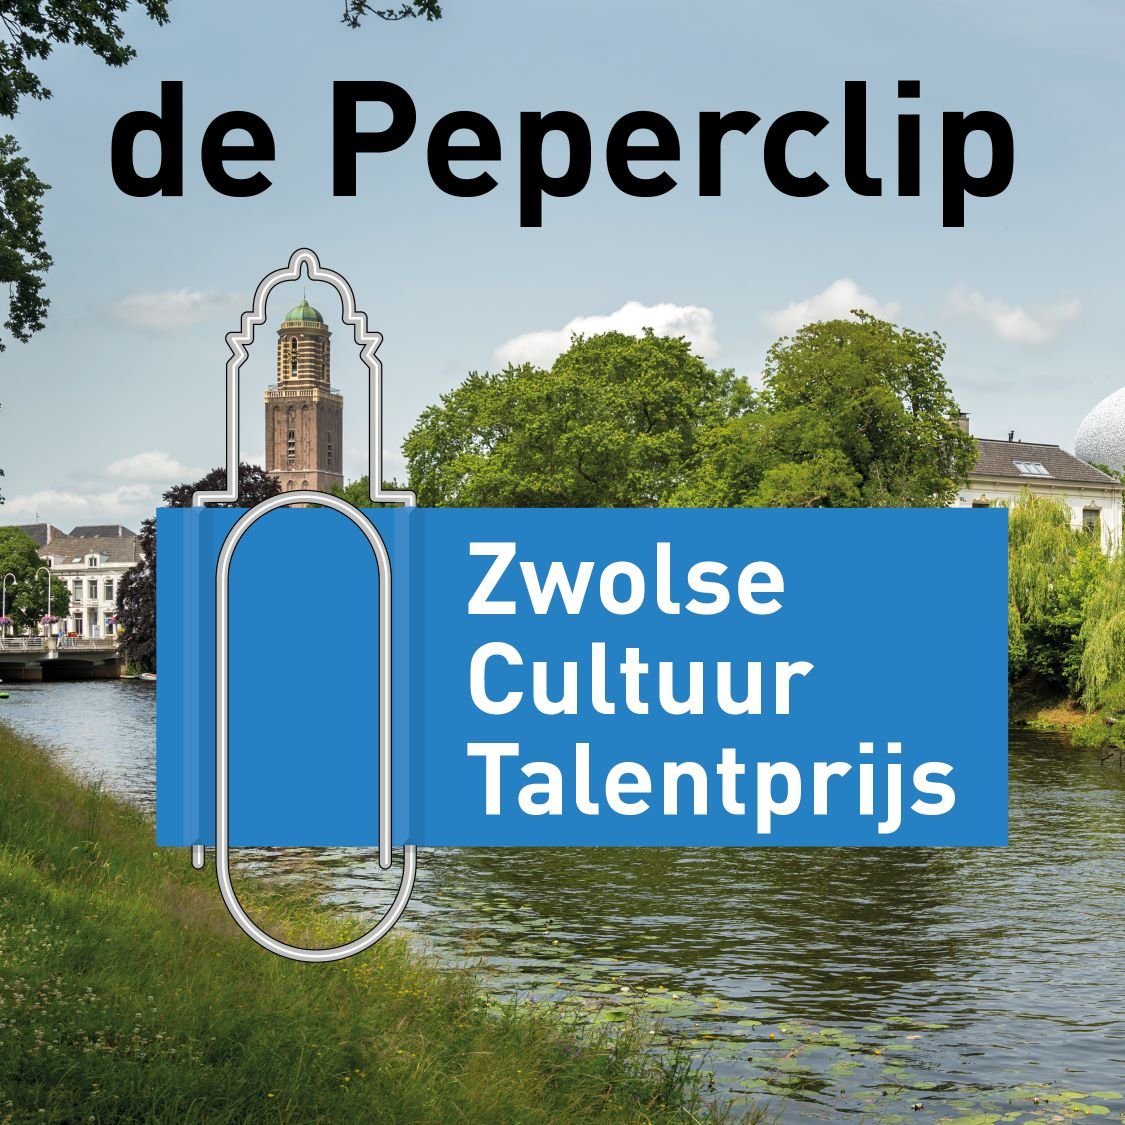 Beeldmerk Zwolse cultuur talentprijs - de Peperbus in beeld, maar een paperclip daar omheen.